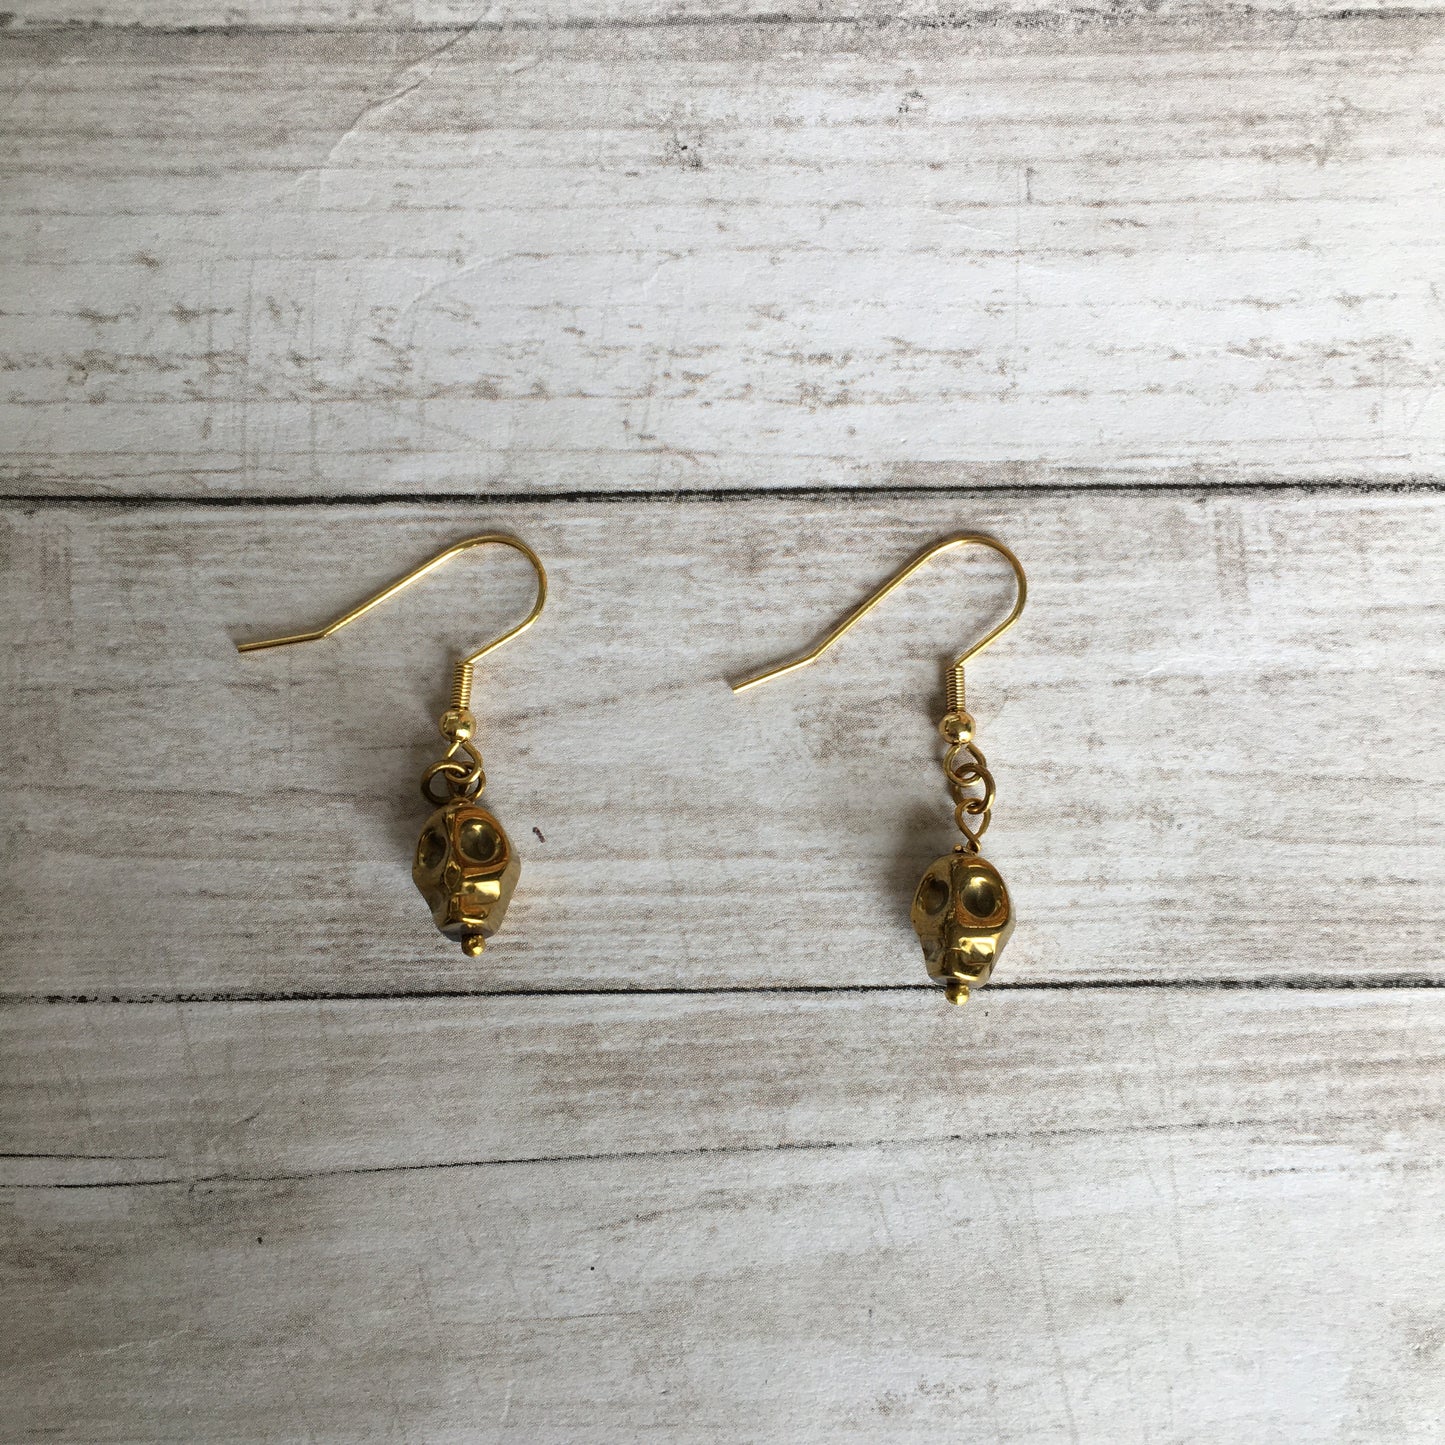 The Golden Hematite Skull Earrings